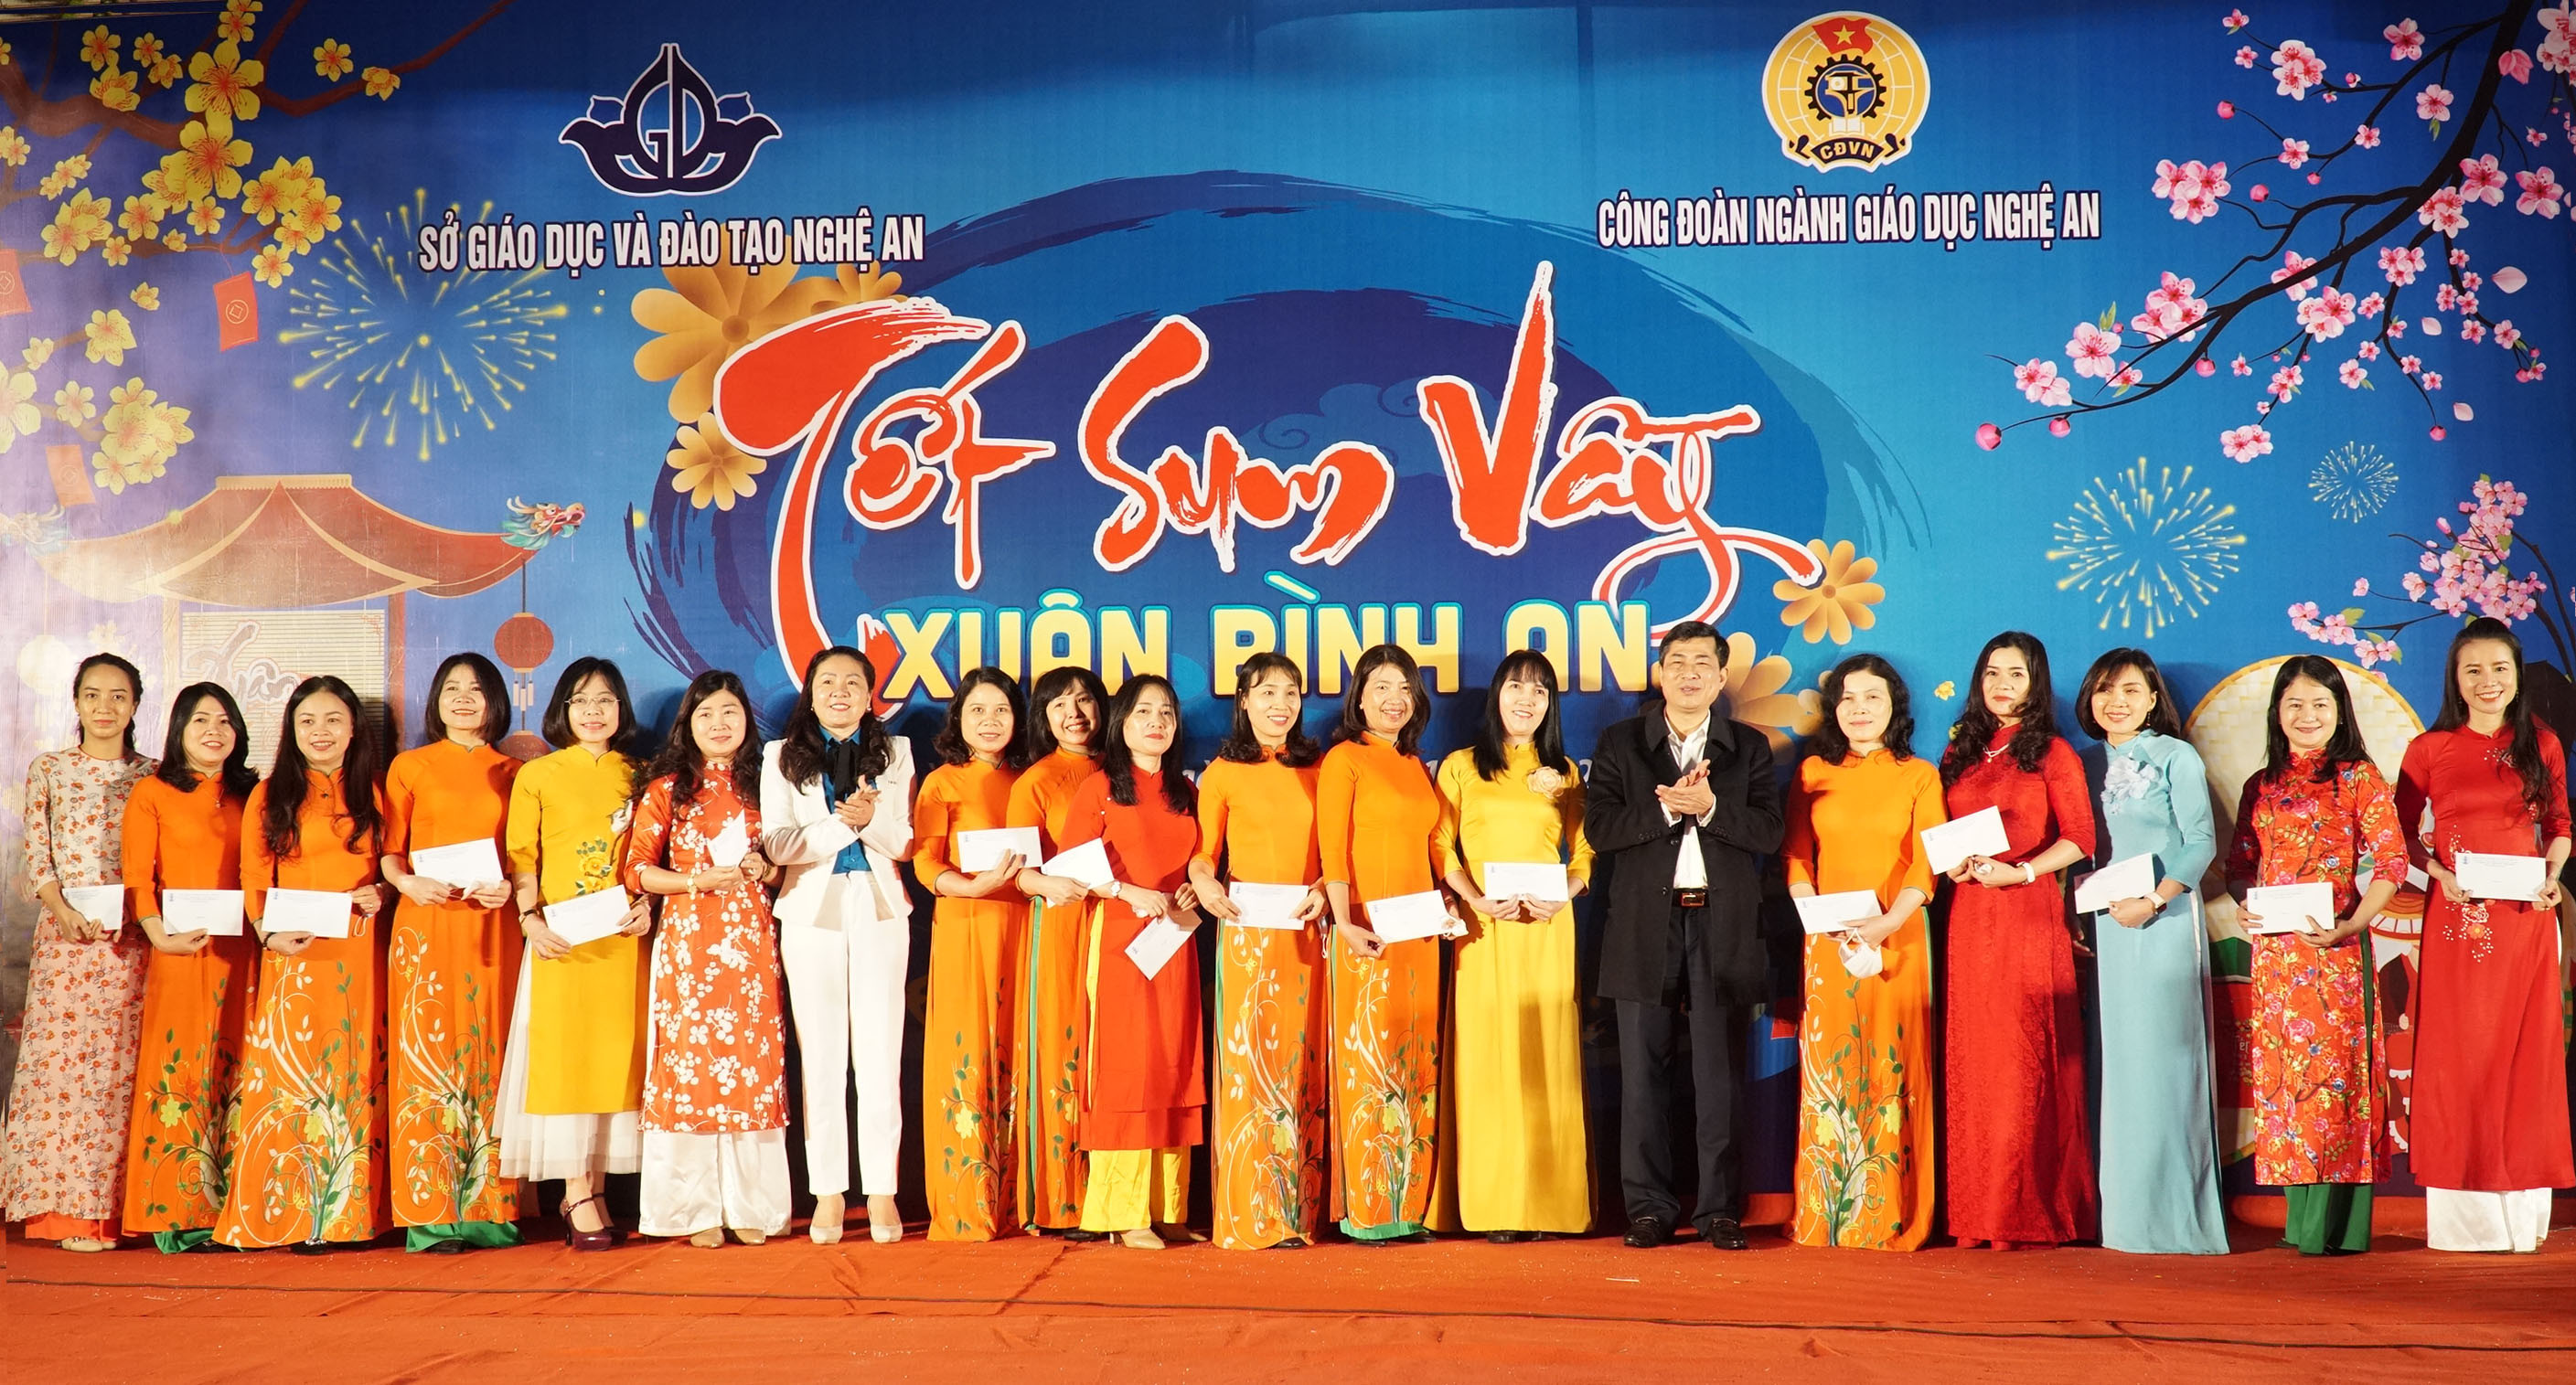 Đồng chí Thái Văn Thành và Nguyễn Thị Thu Nhi trao quà cho các giáo viên tham gia chương trình Tết sum vầy. Ảnh: MH